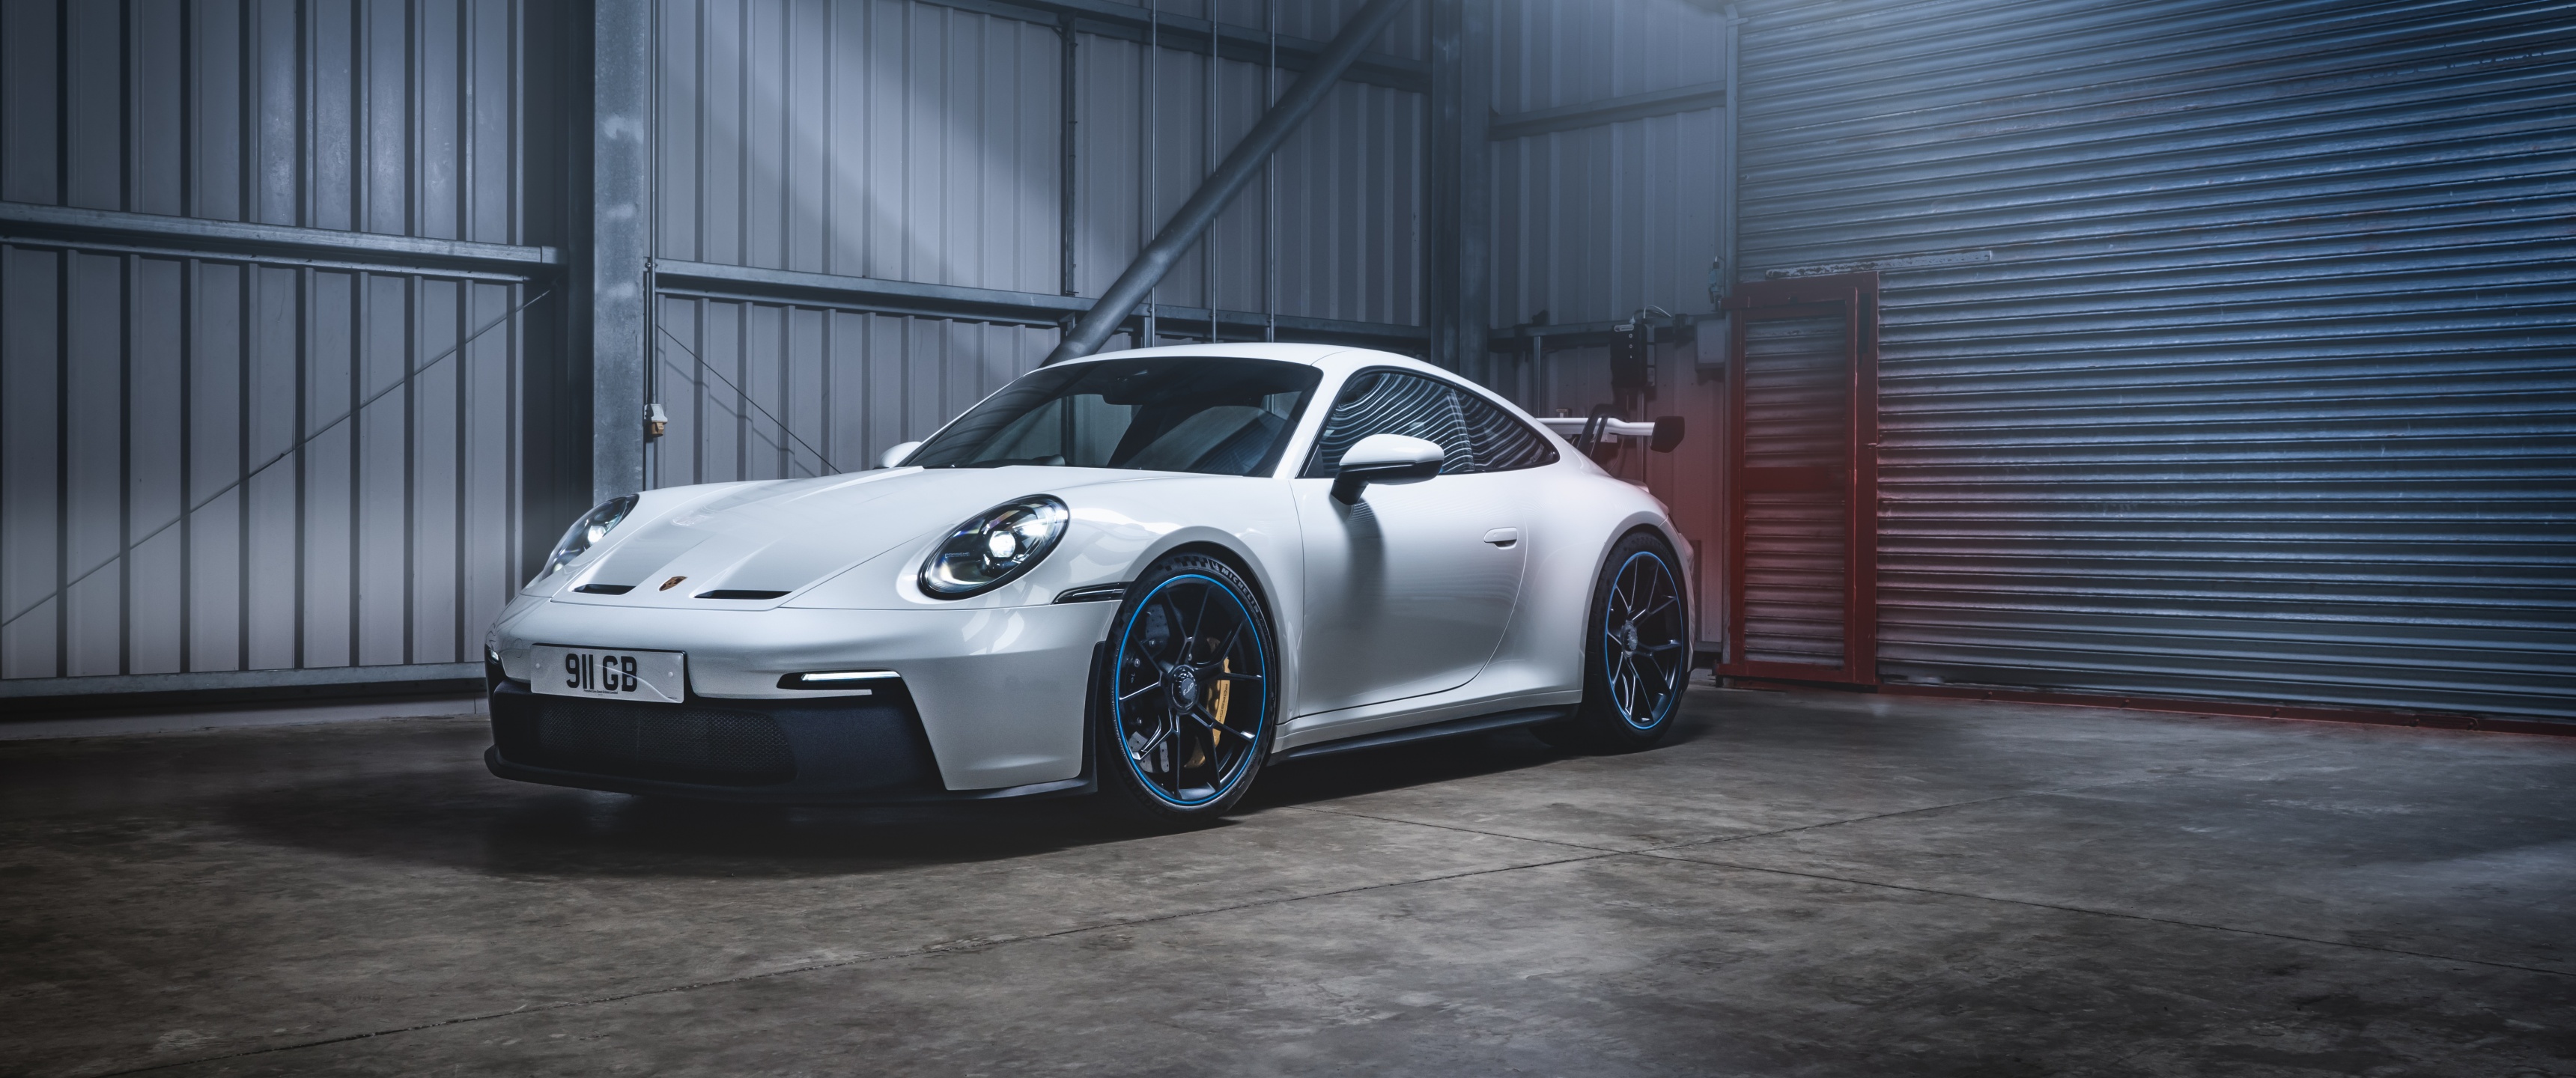 Porsche 911 Gt3 Pdk Wallpaper 4k Sports Cars 2021 5k Cars 6014